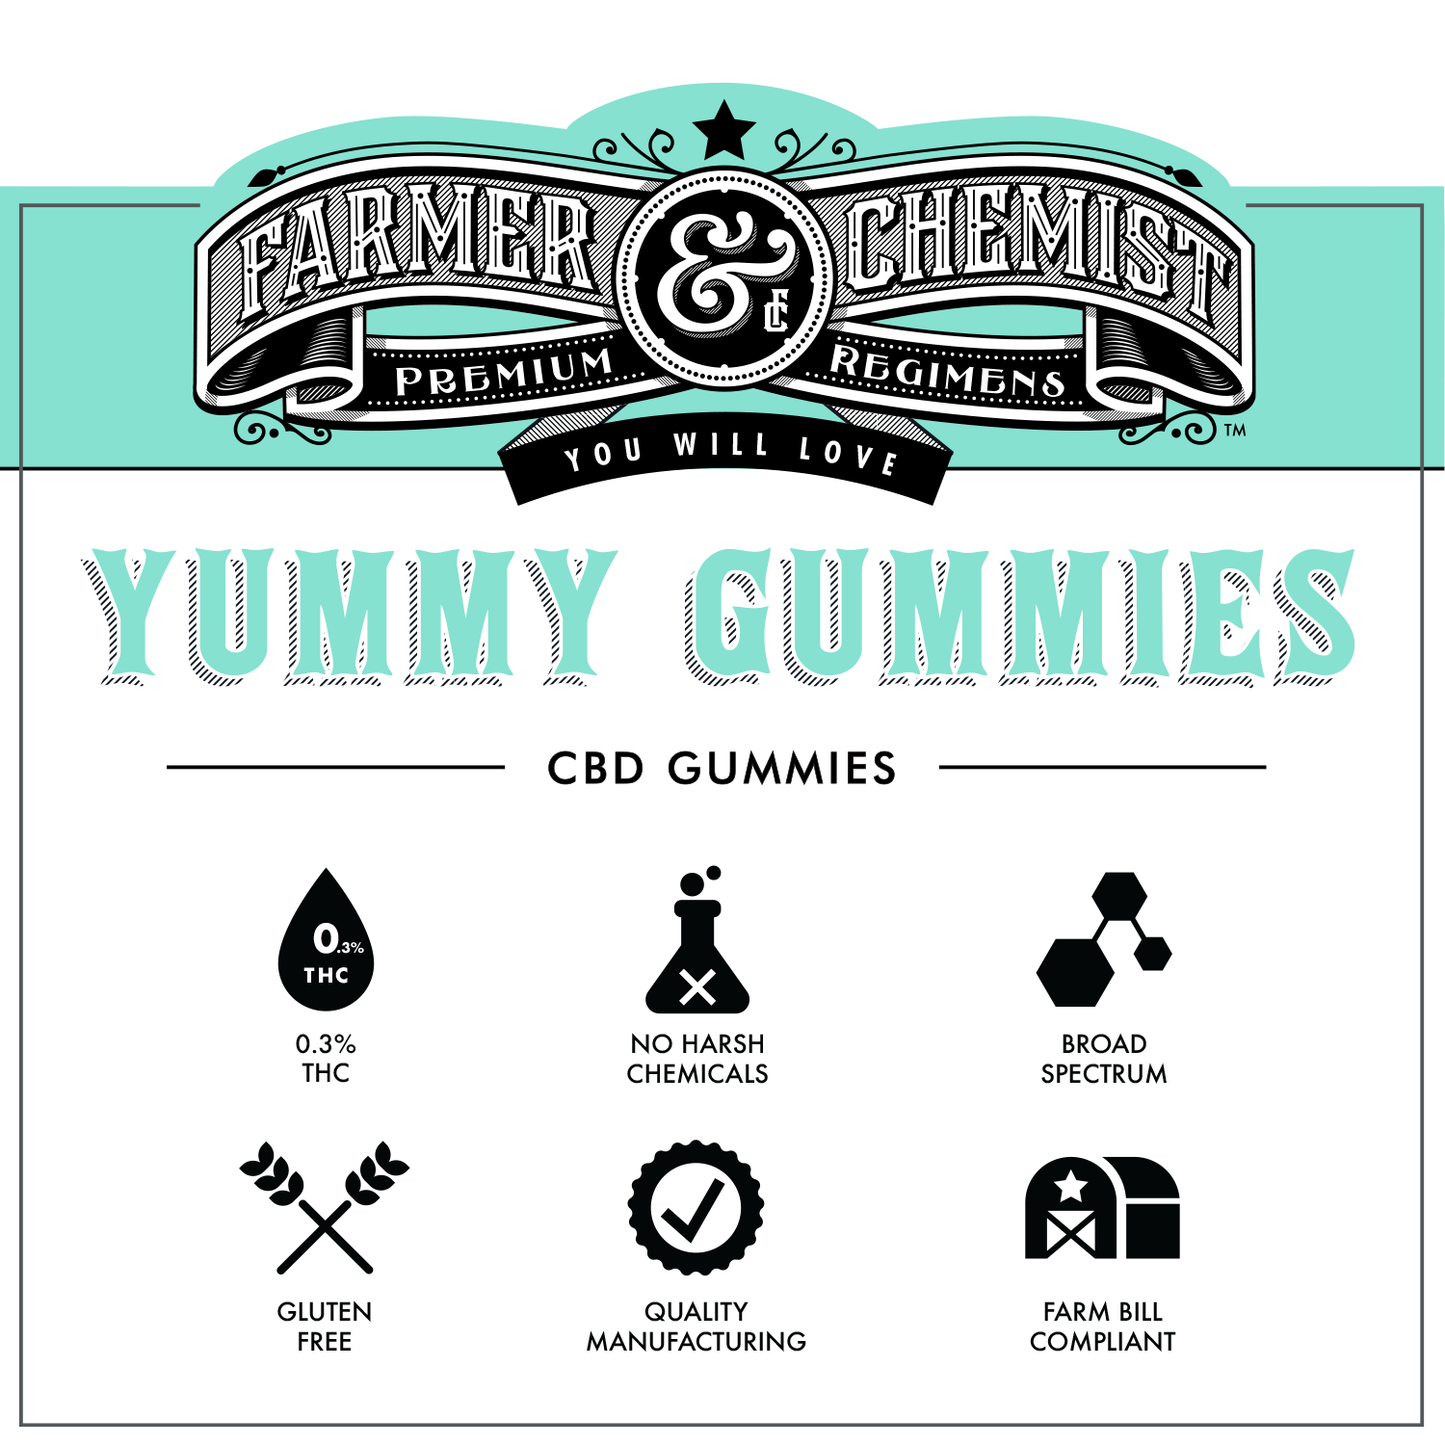 YUMMY GUMMIES - 12ct 35mg CBD / 5mg CBN / 4mg THC Gummies